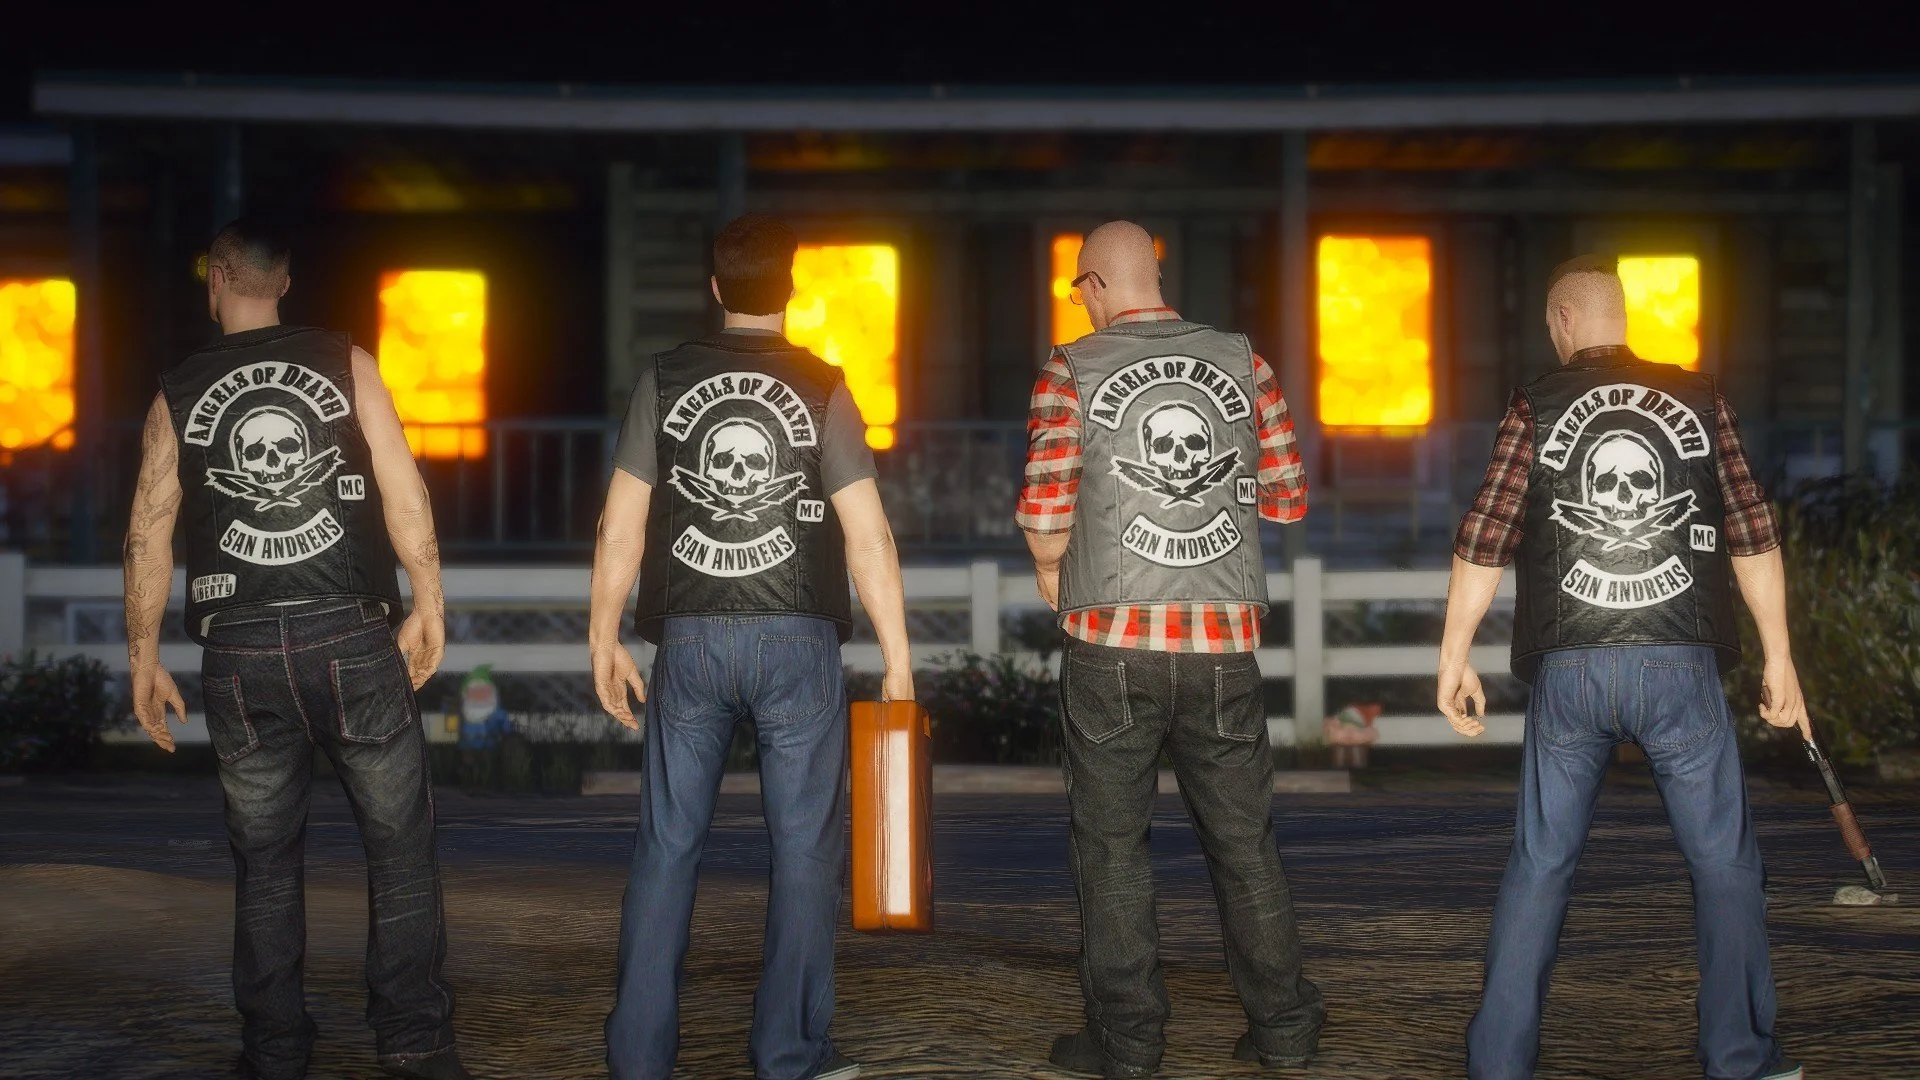 GTA MC Liberty Angels of Death Vest - Jacket Makers